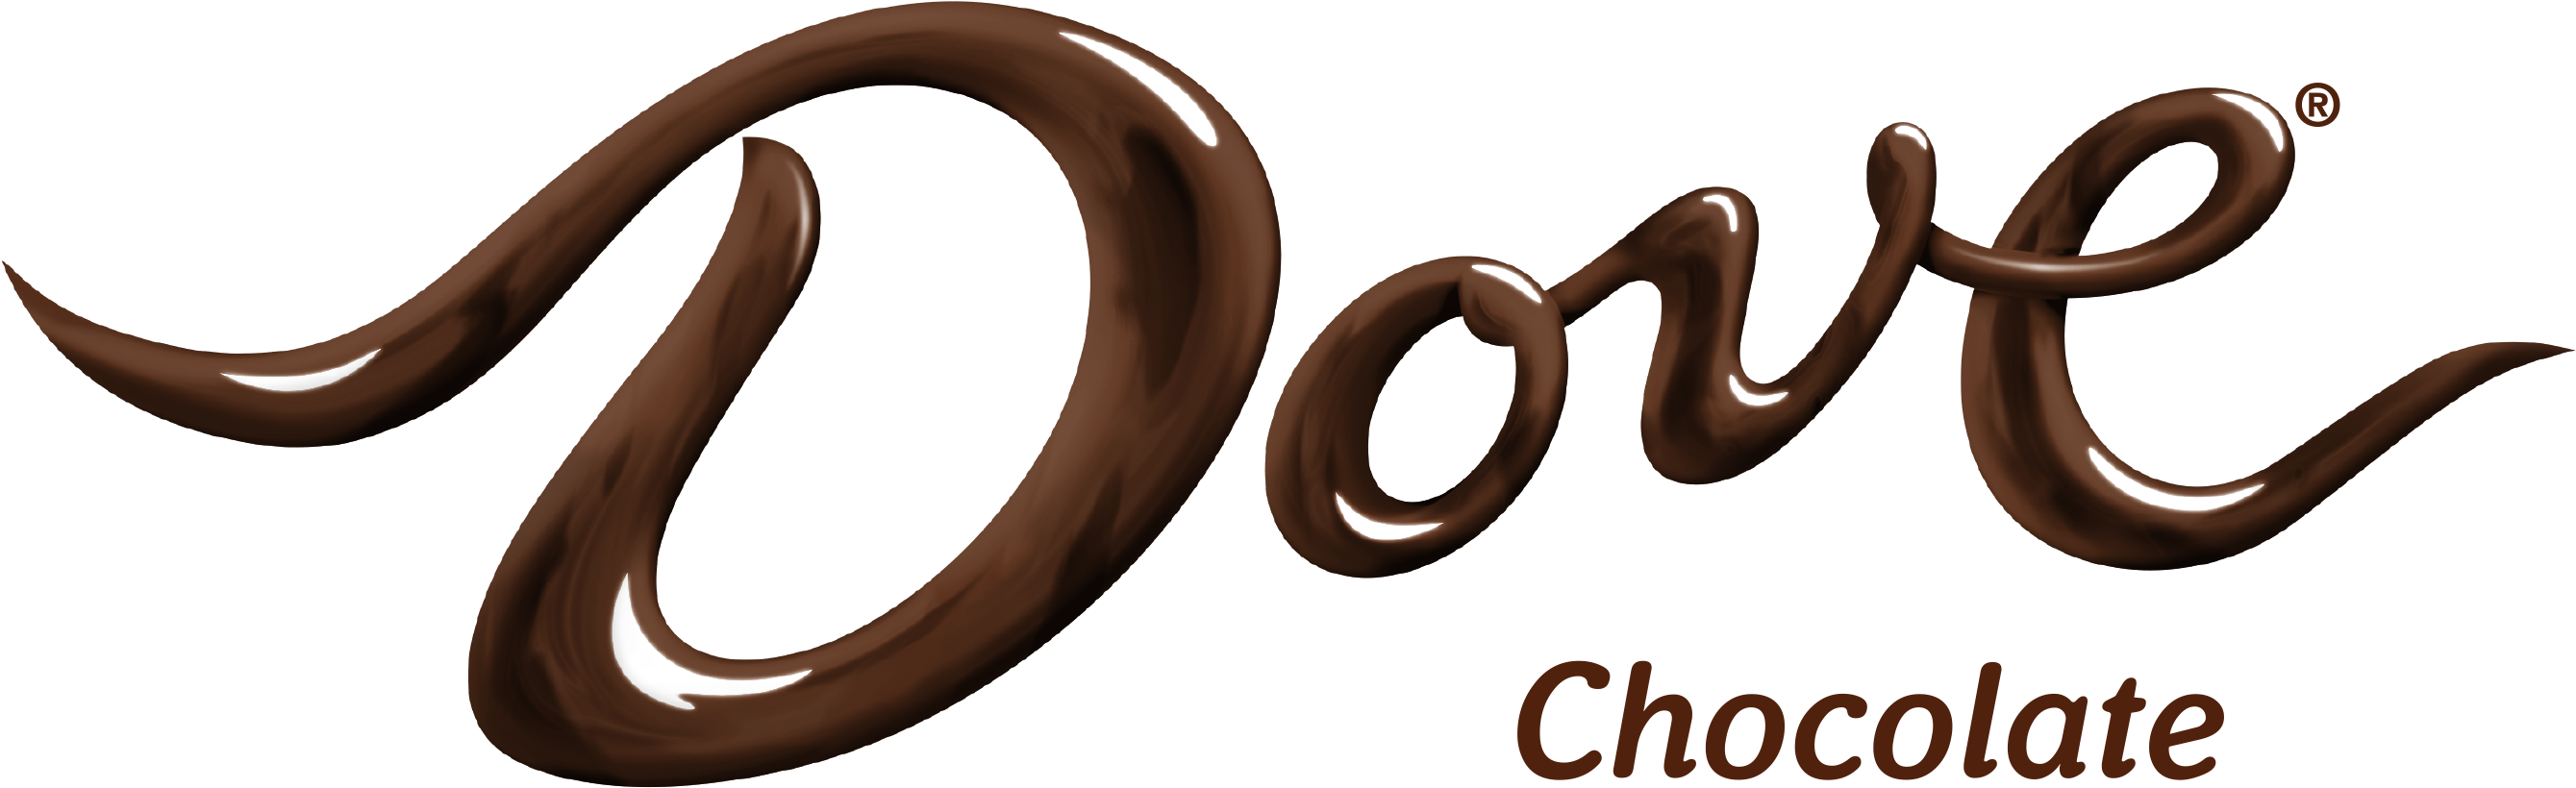 Premium Vector | Chocolate logos